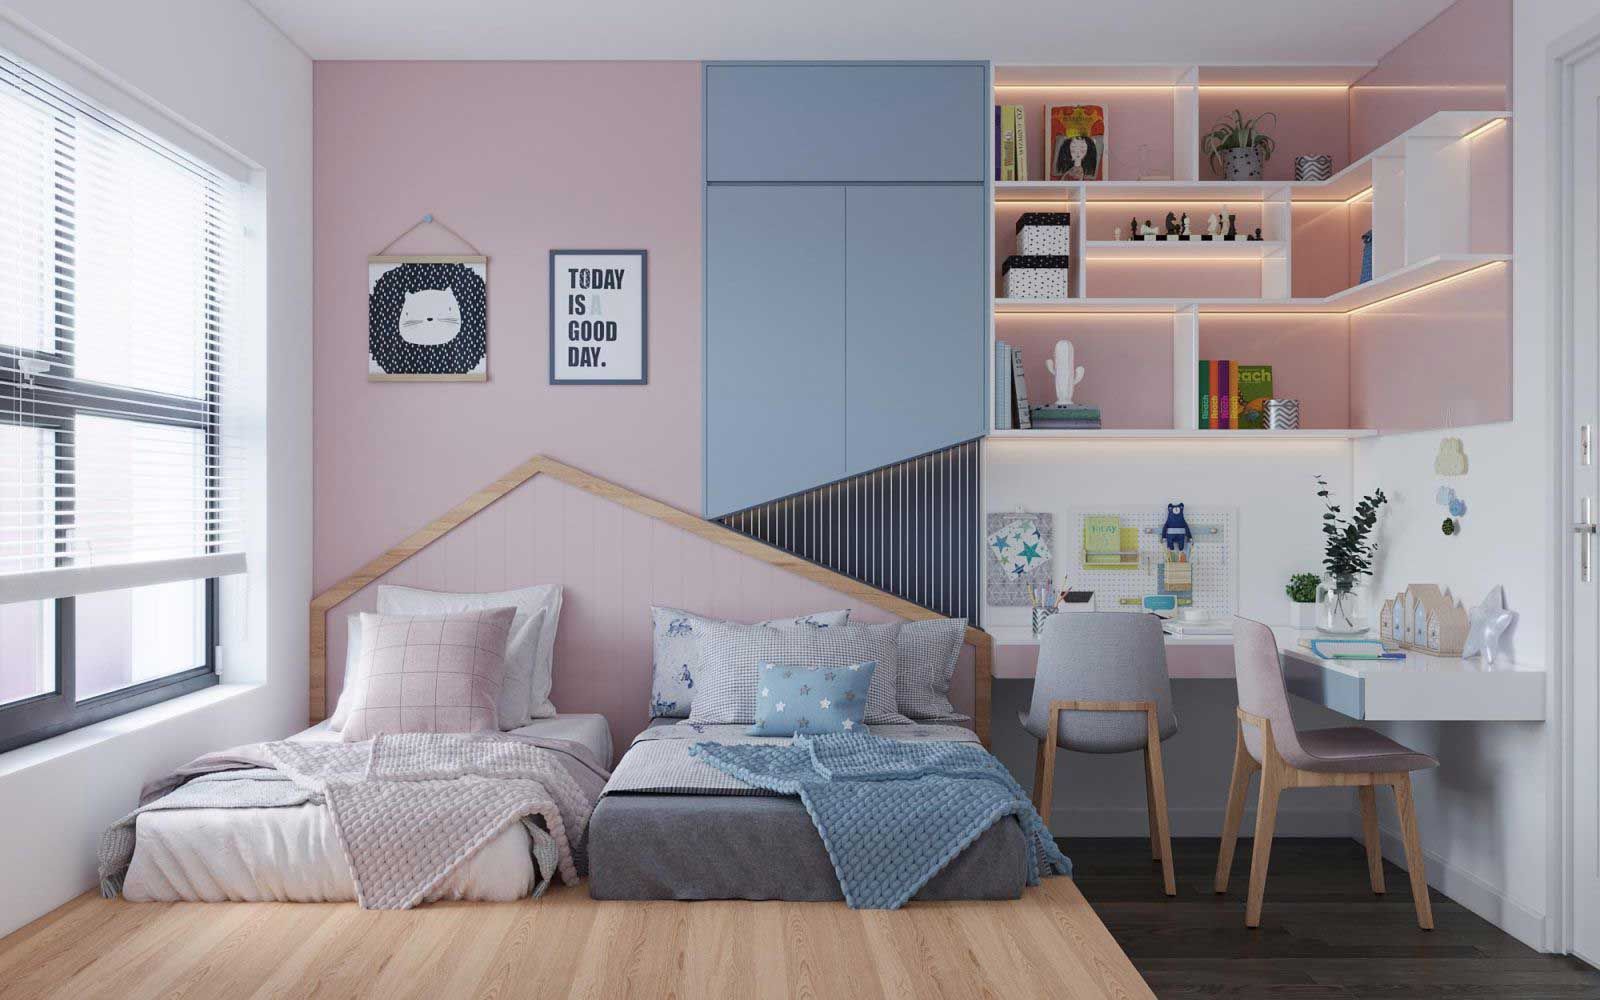 Màu hồng xinh xắn kết hợp màu xanh năng động giúp căn phòng trở nên cá tính hơn